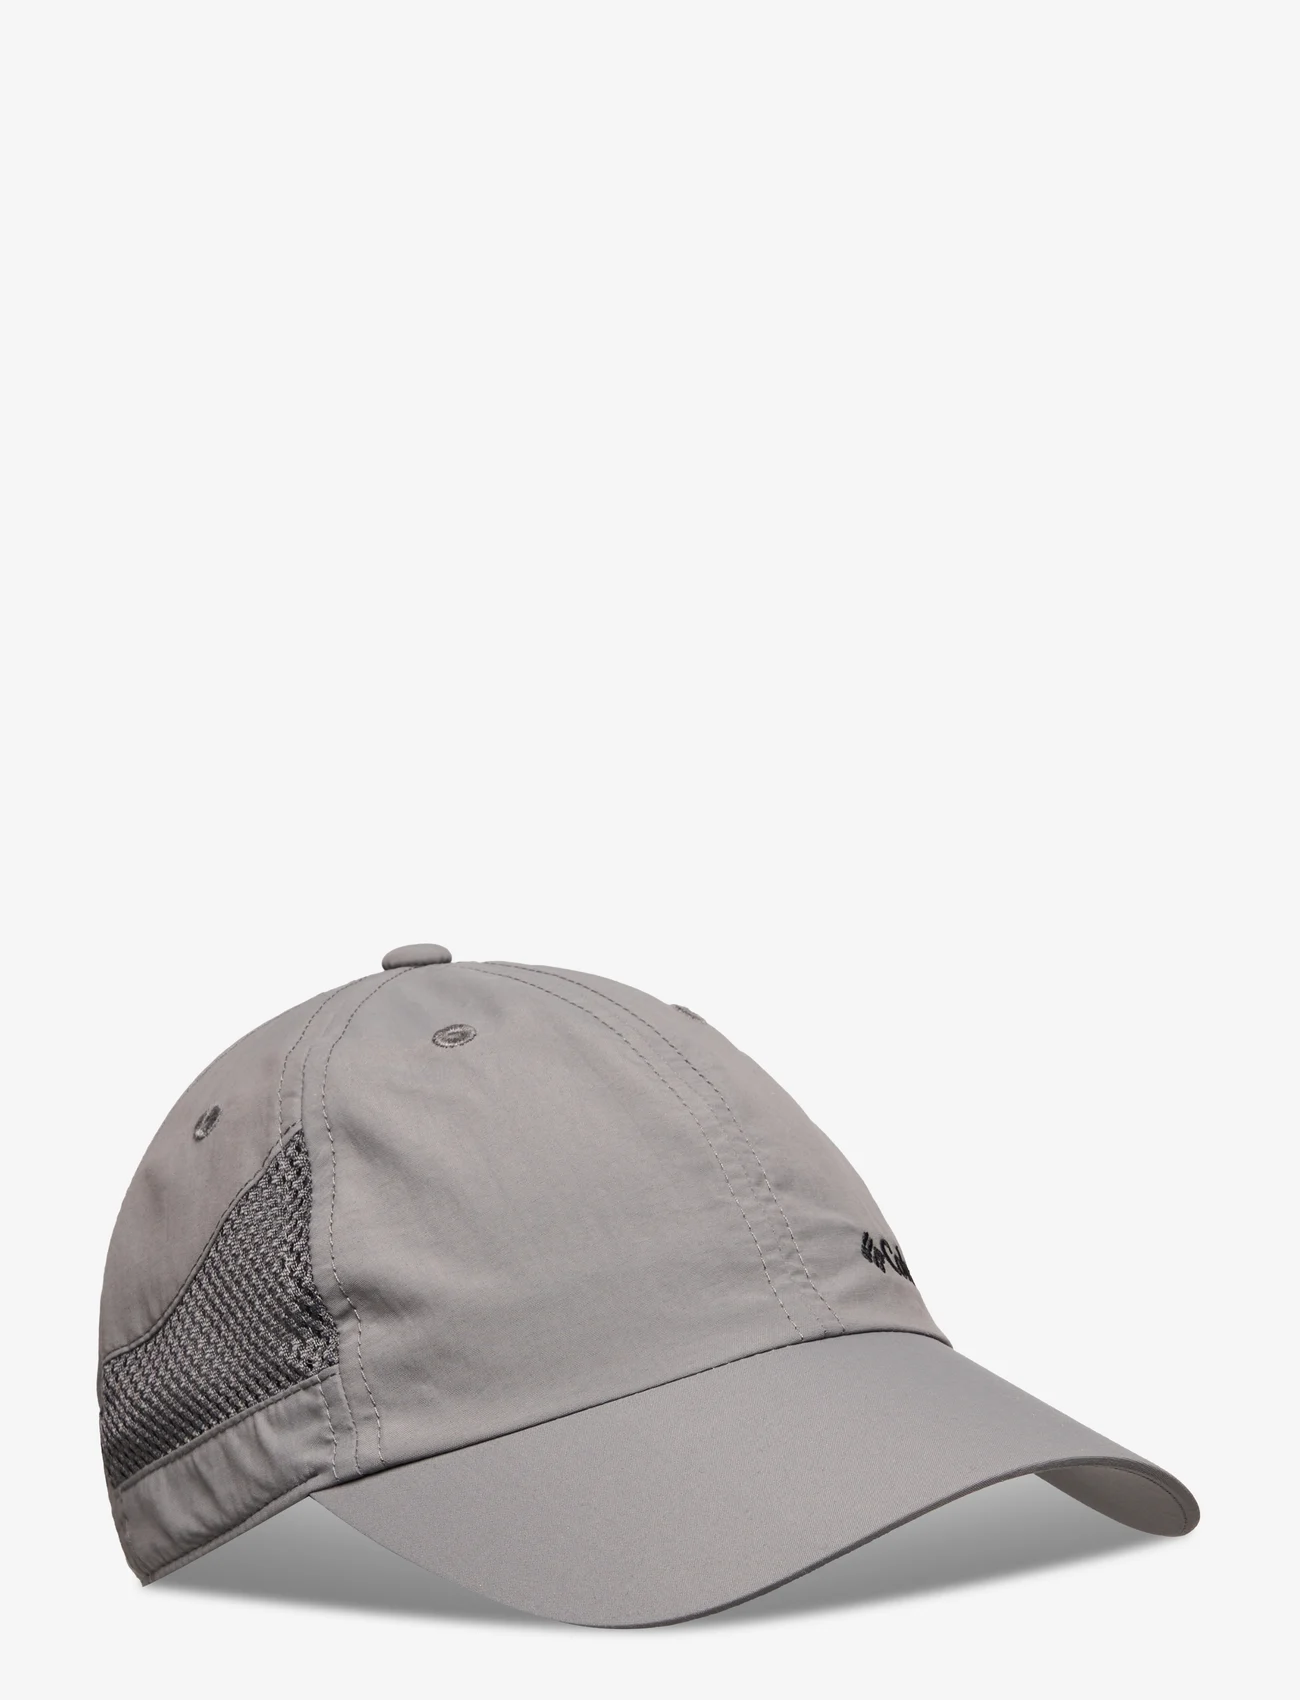 Columbia Sportswear - Tech Shade Hat - laagste prijzen - city grey - 0